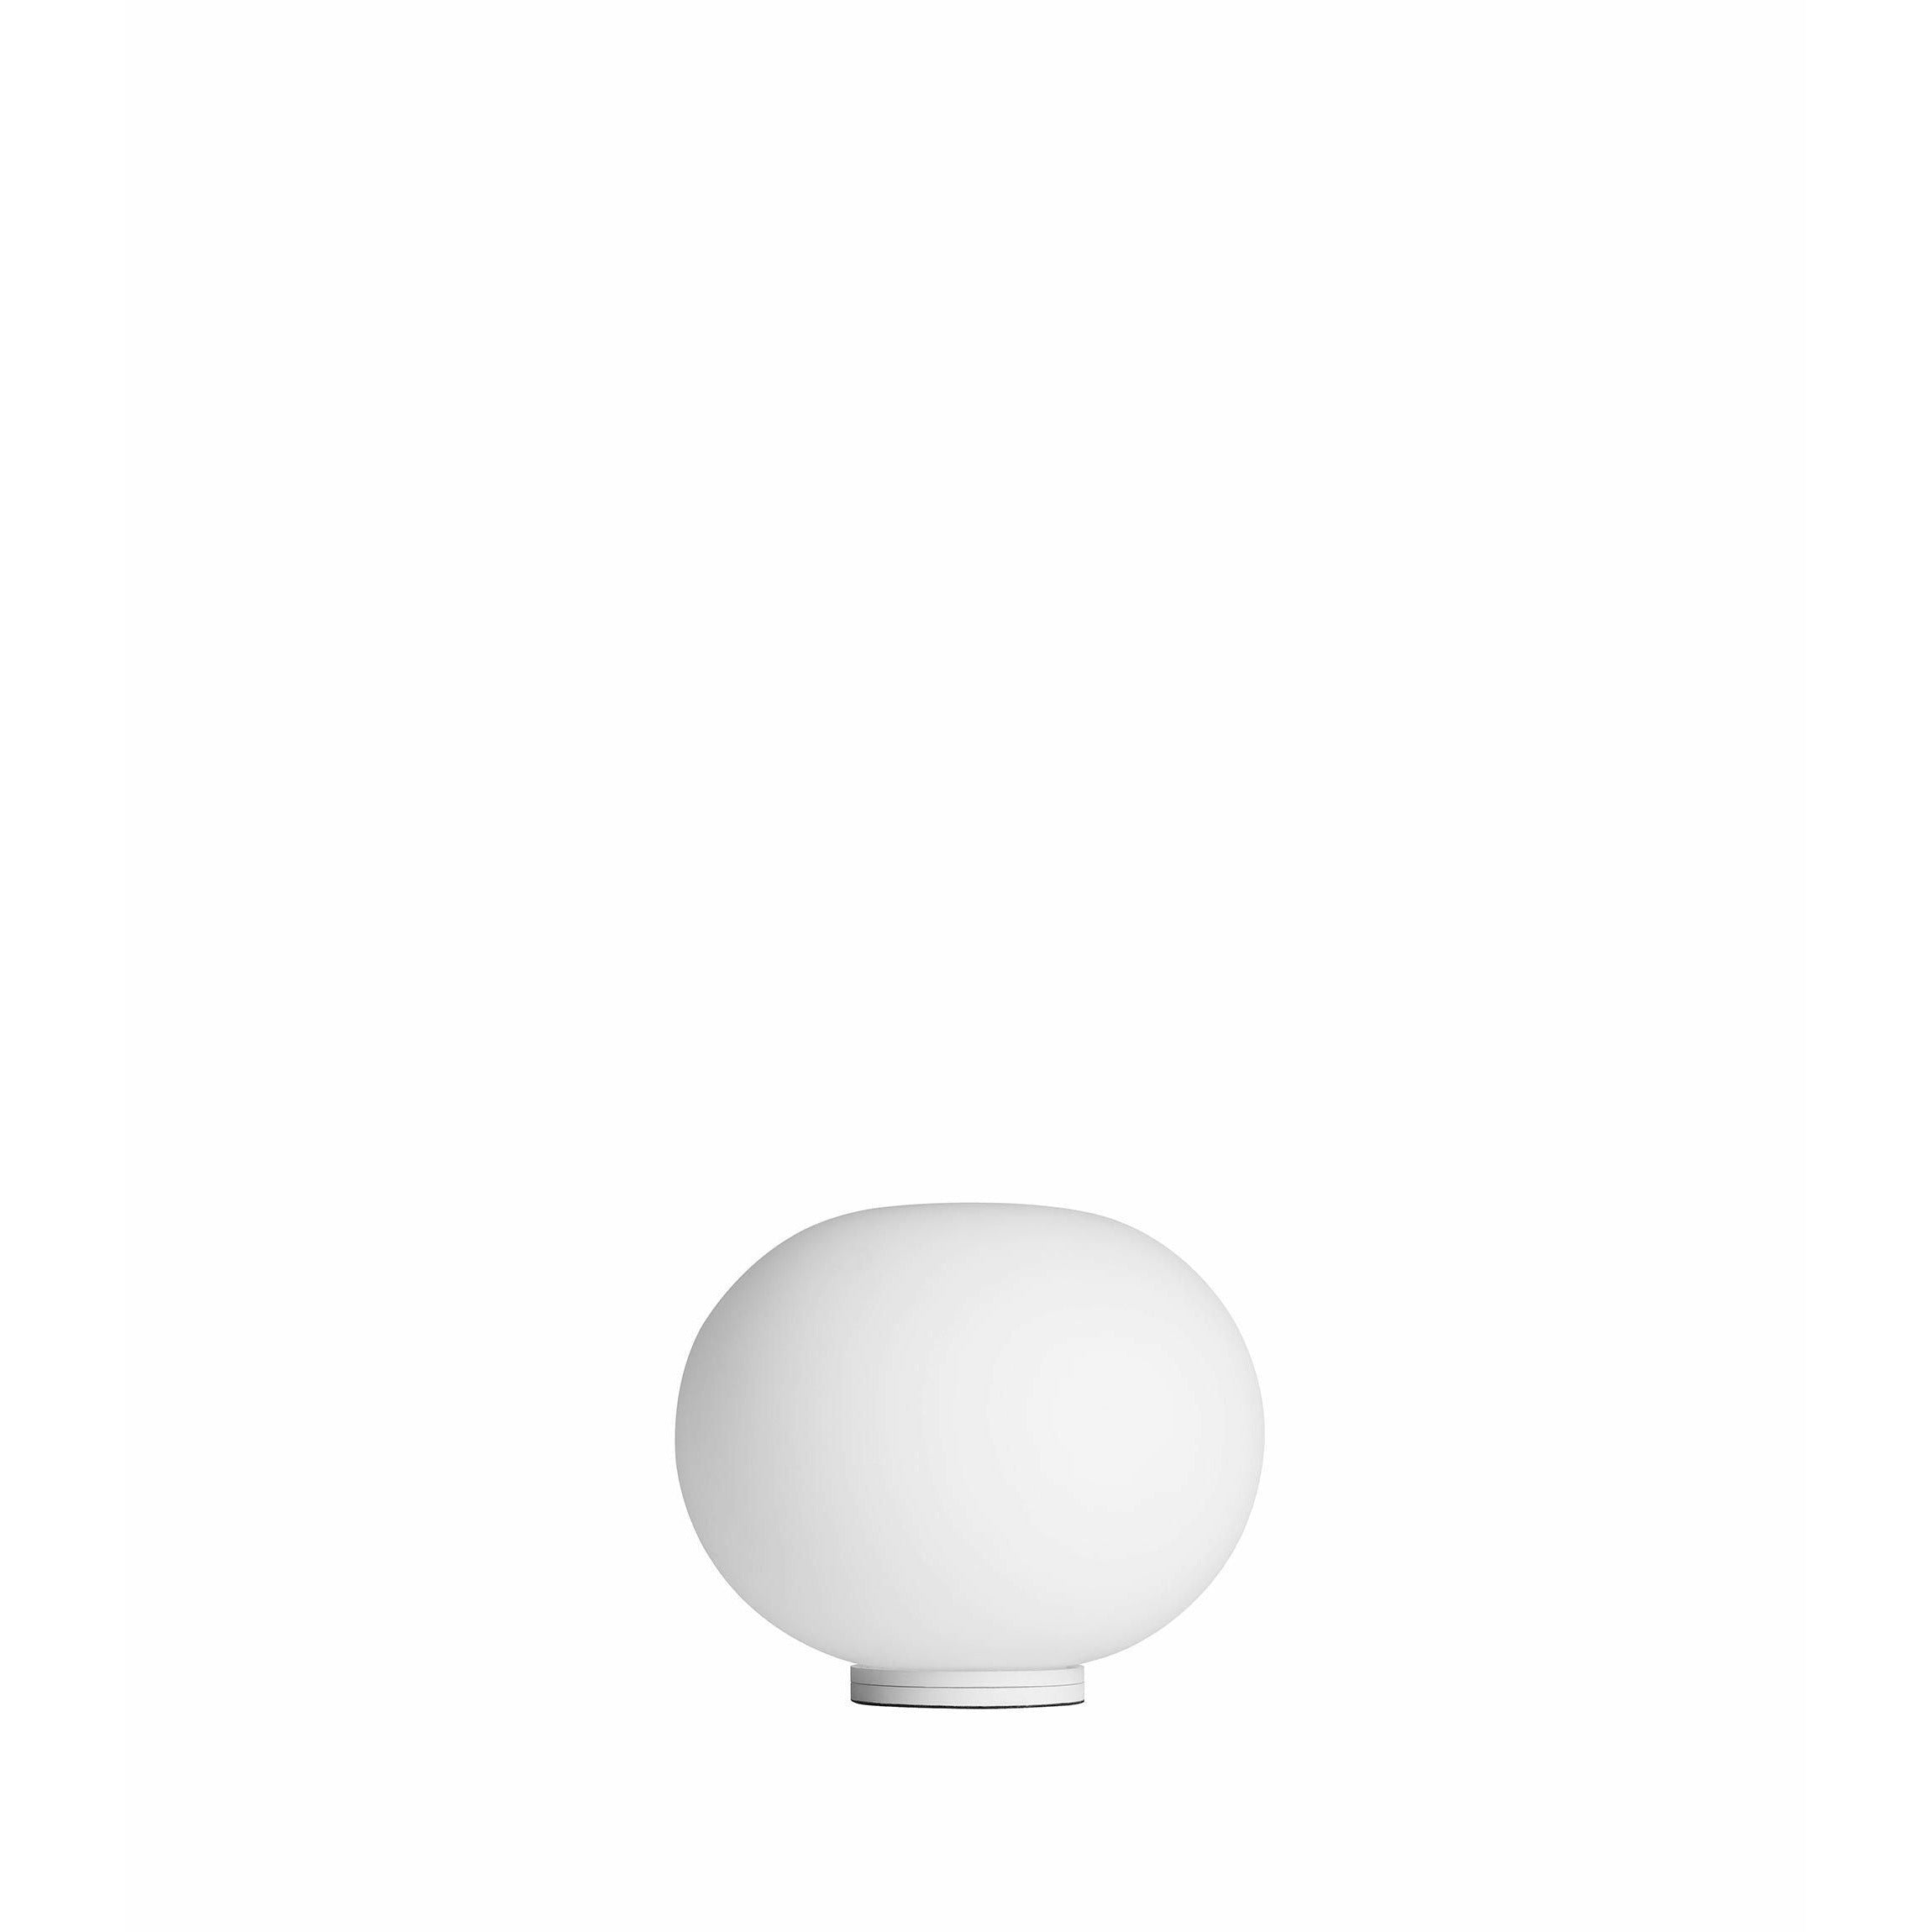 Flos glo sfera lampada da tavolo zero base con interruttore